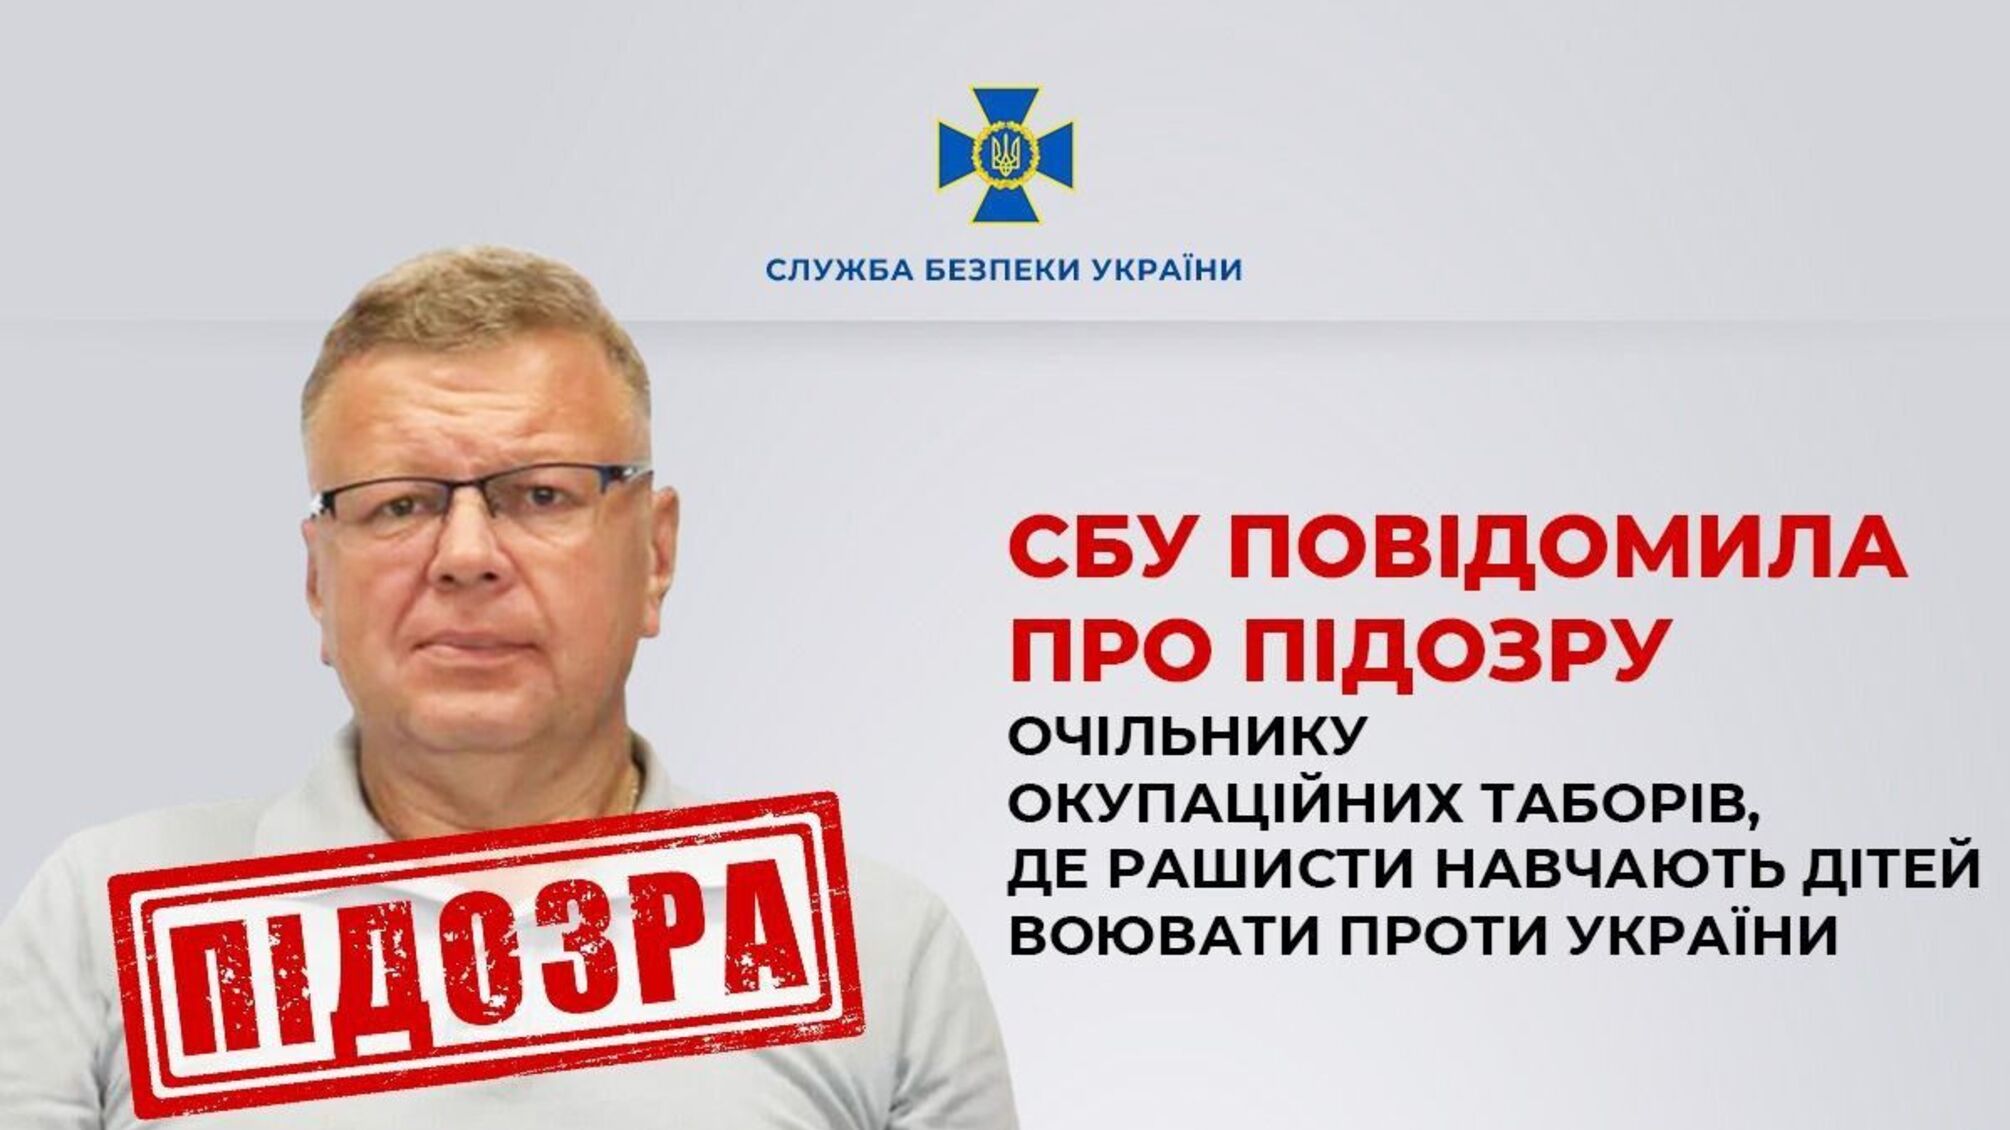 СБУ сообщила о подозрении главе оккупационных лагерей, где рашисты учат детей воевать против Украины